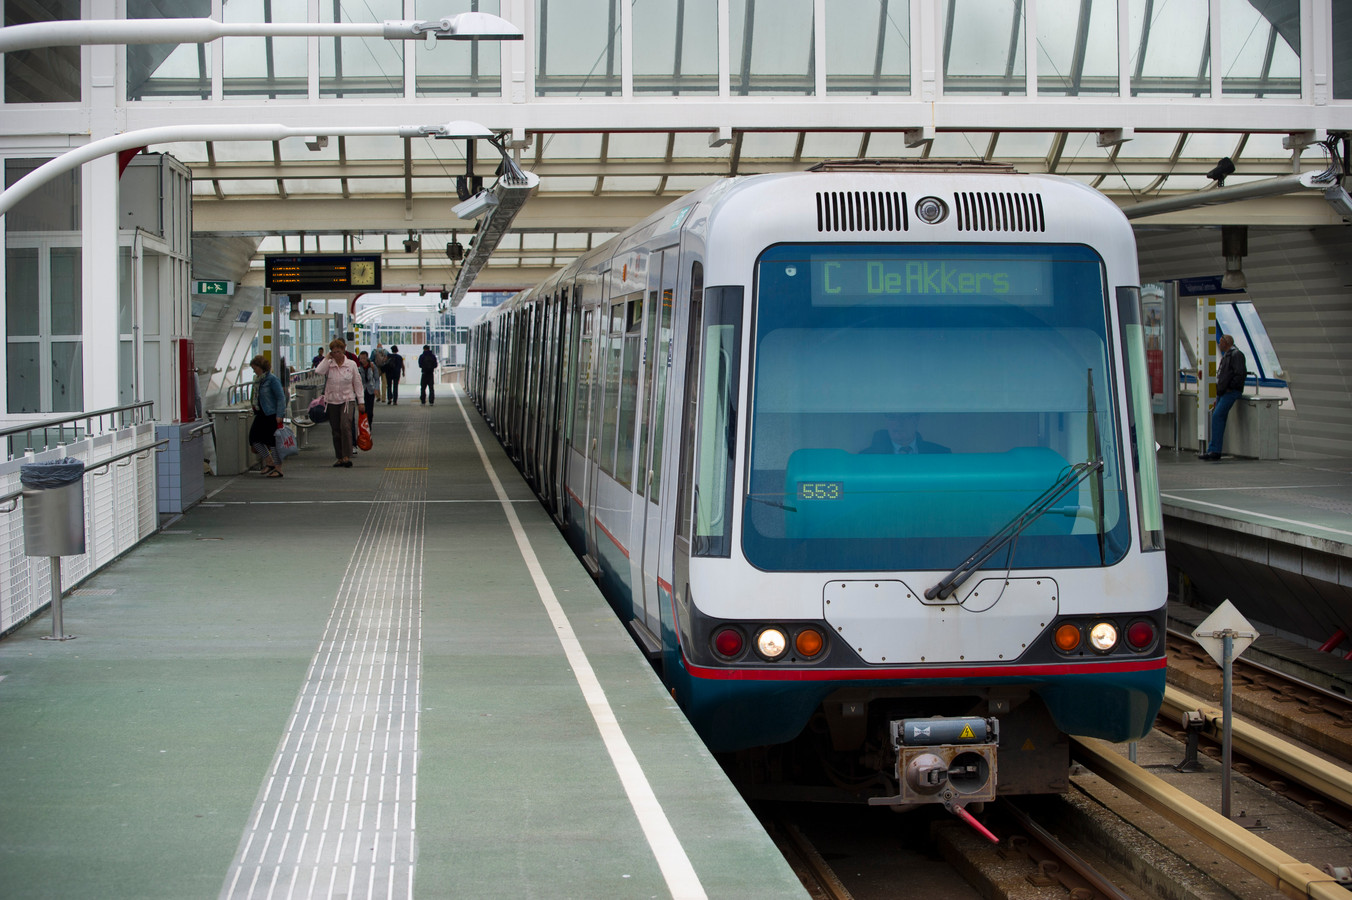 Metro C De Terp Metro in Nissewaard moet veel zachter rijden vóór 06.00 uur' | Foto | AD.nl